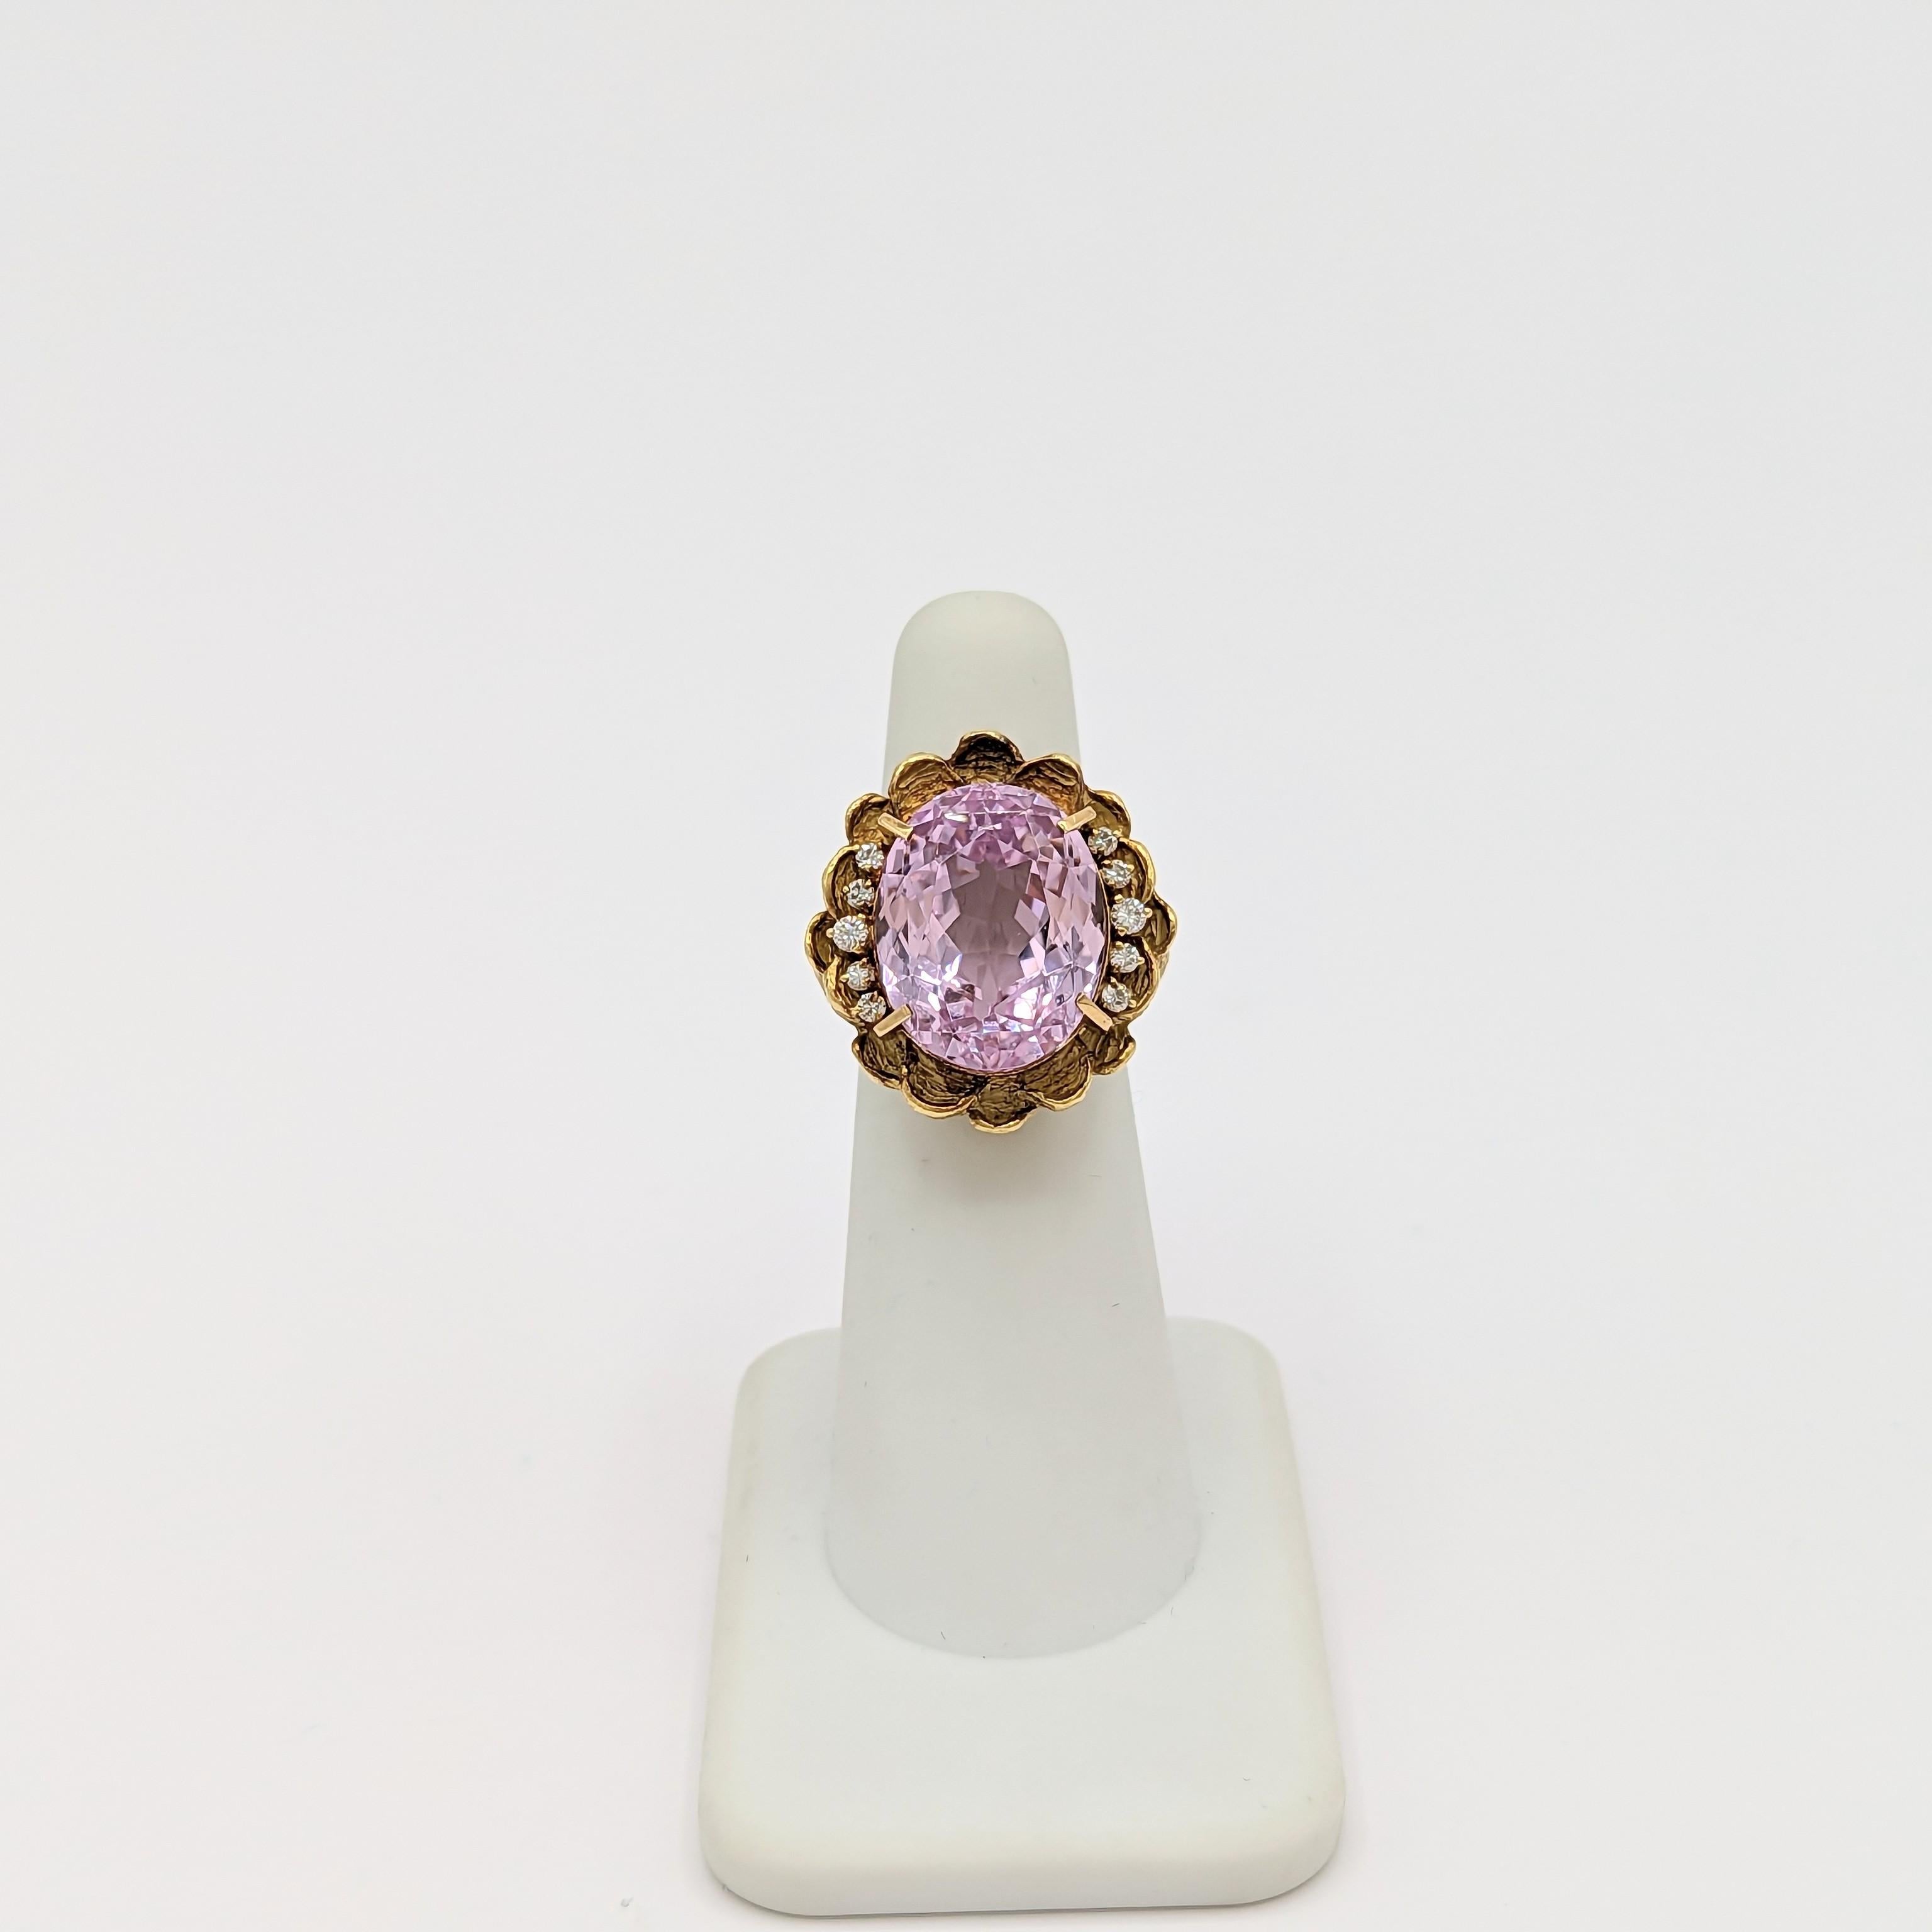 Wunderschönes großes hellrosa Kunzit-Oval mit 0,05 Karat weißen runden und quadratischen Diamanten.  Handgefertigt in 18k Gelbgold.  Ring Größe 5,5.